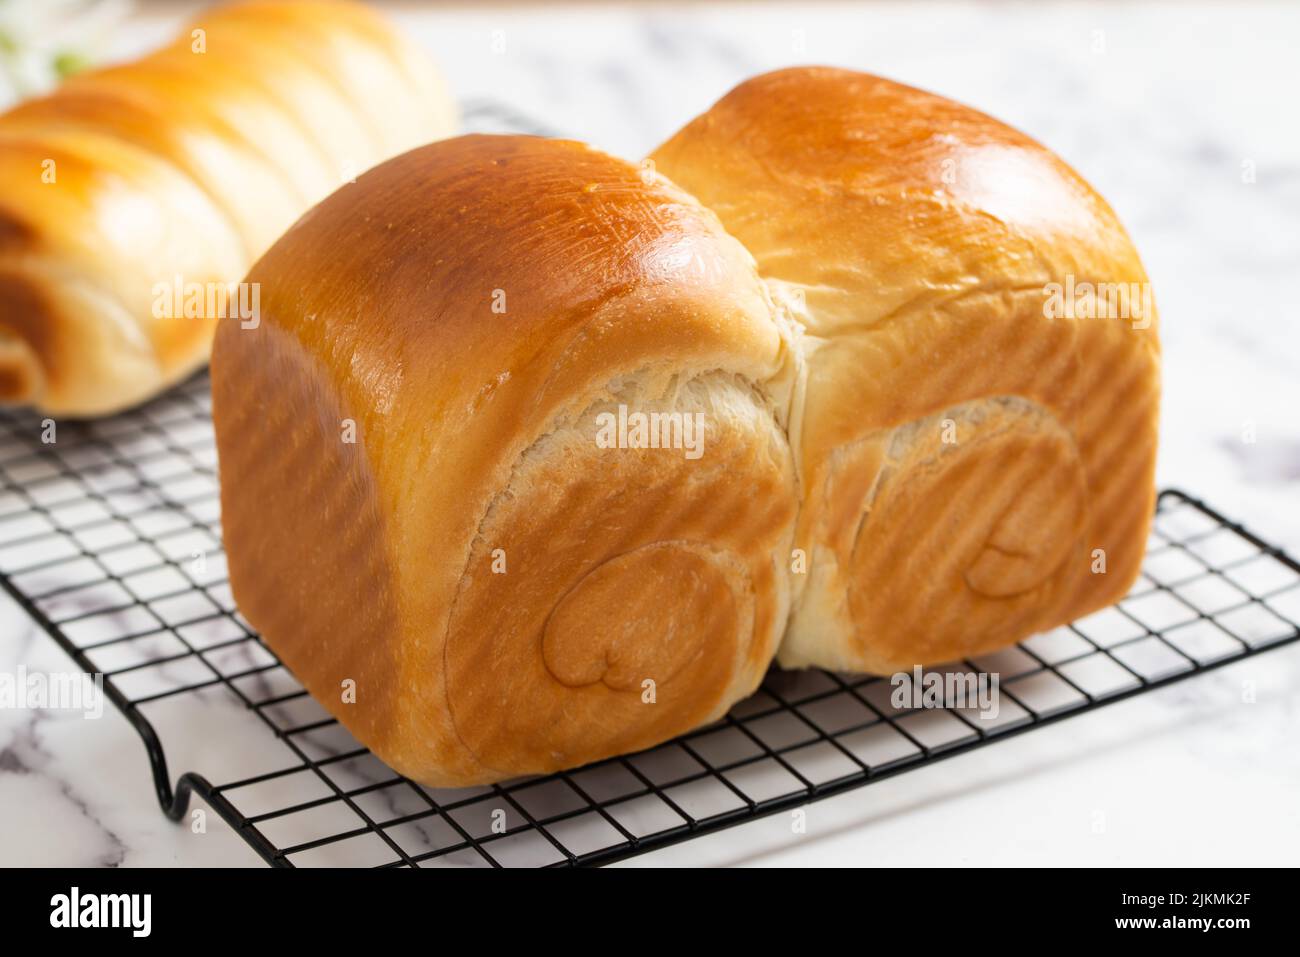 Homemade bake sweet bun or dinner roll Stock Photo